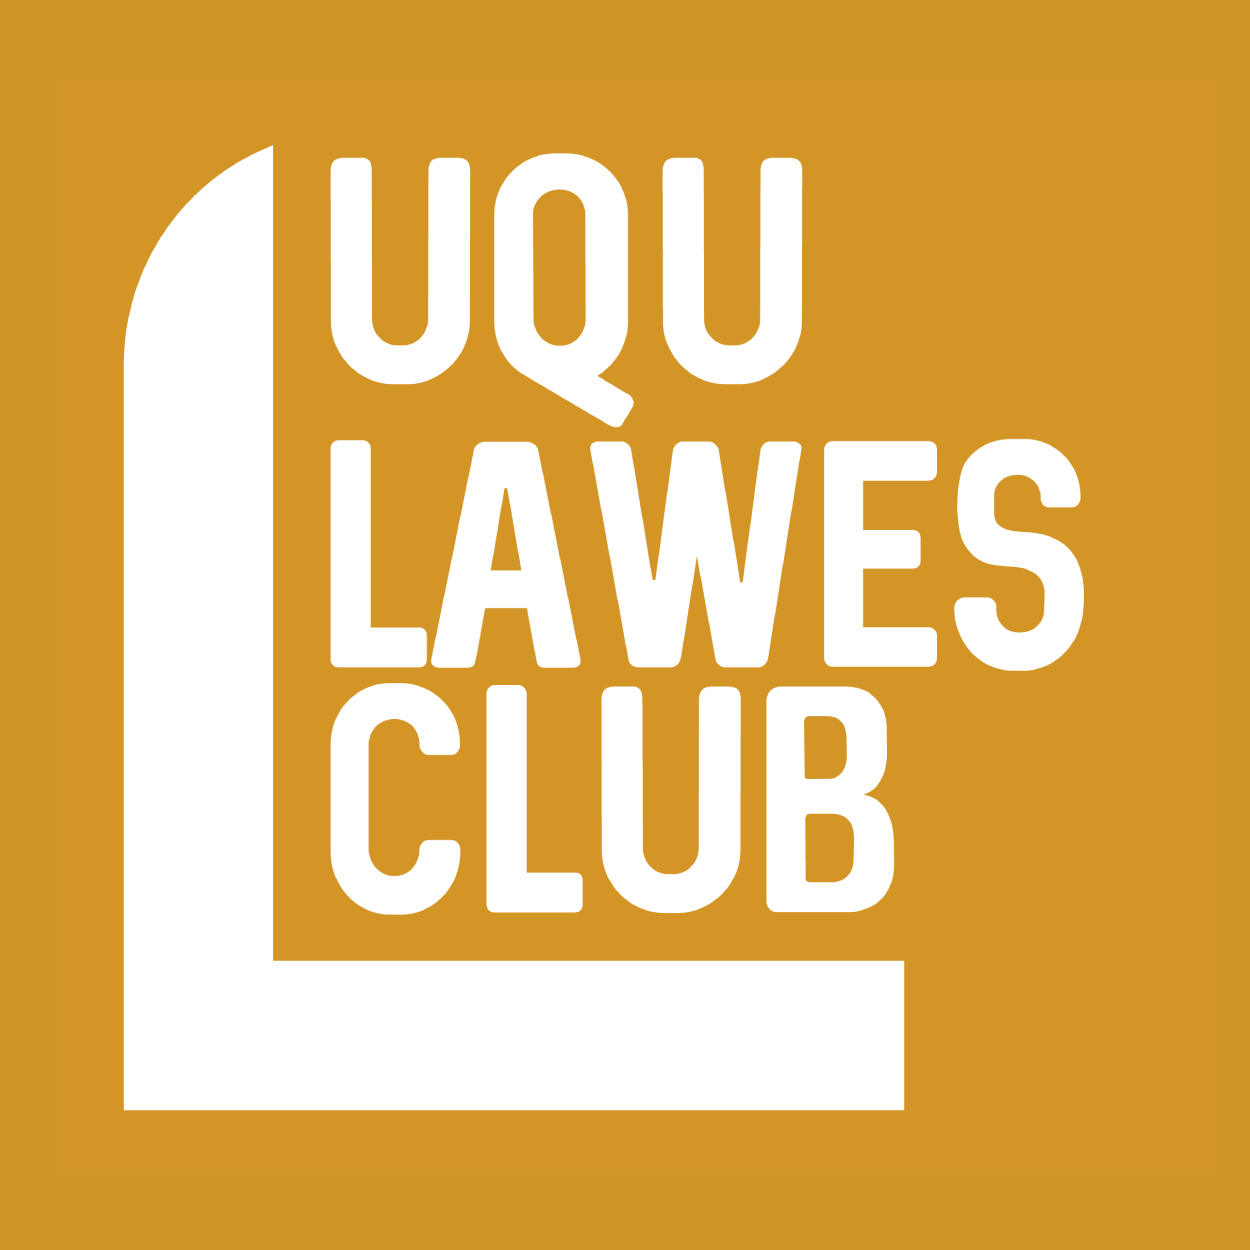 lawes club logo